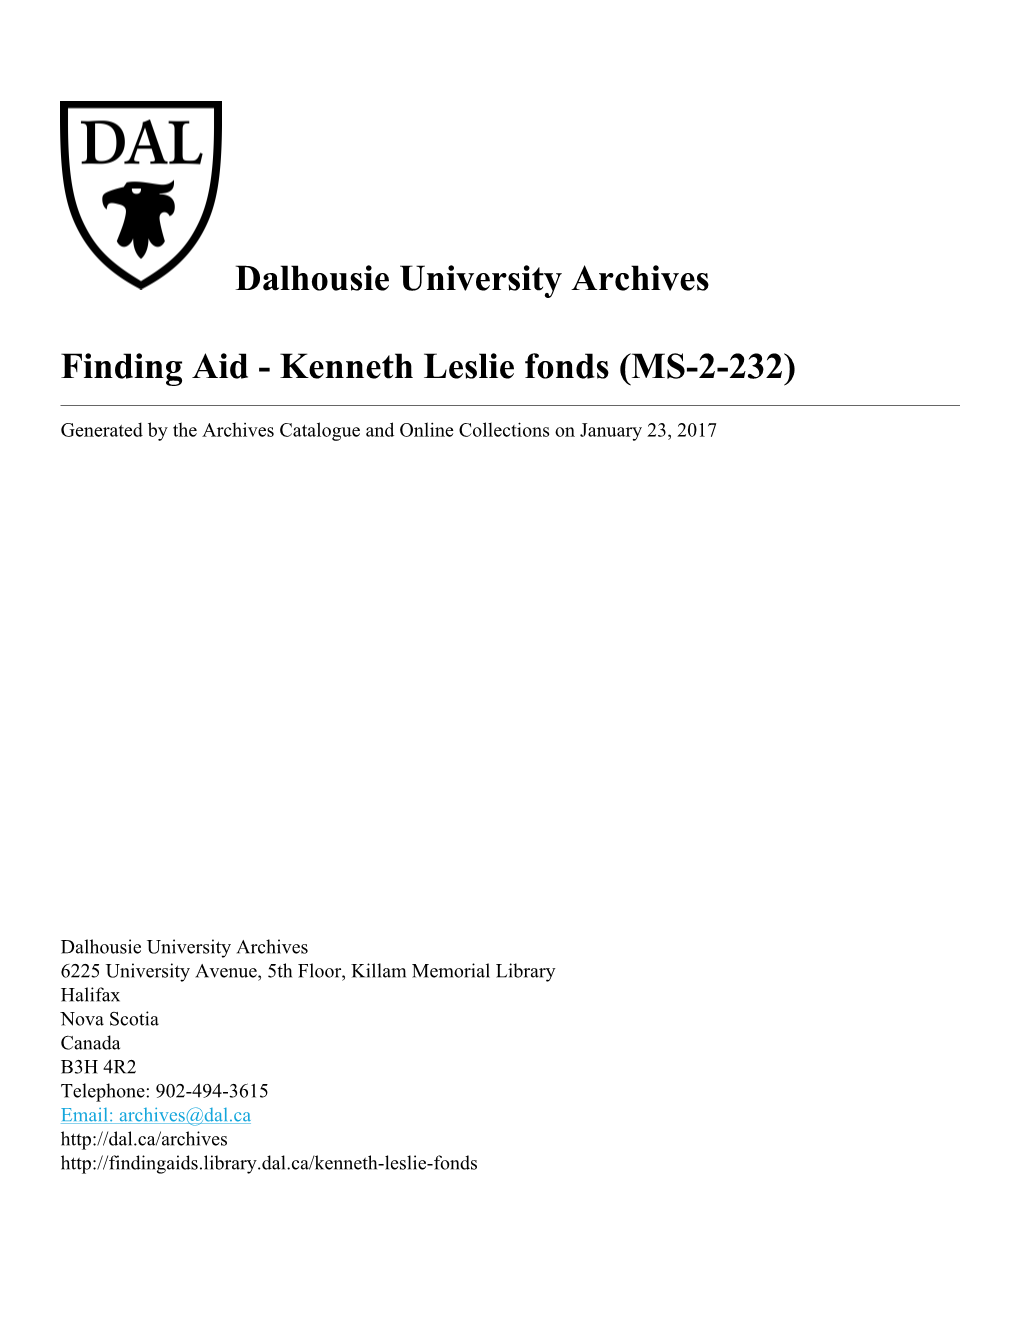 Kenneth Leslie Fonds (MS-2-232)